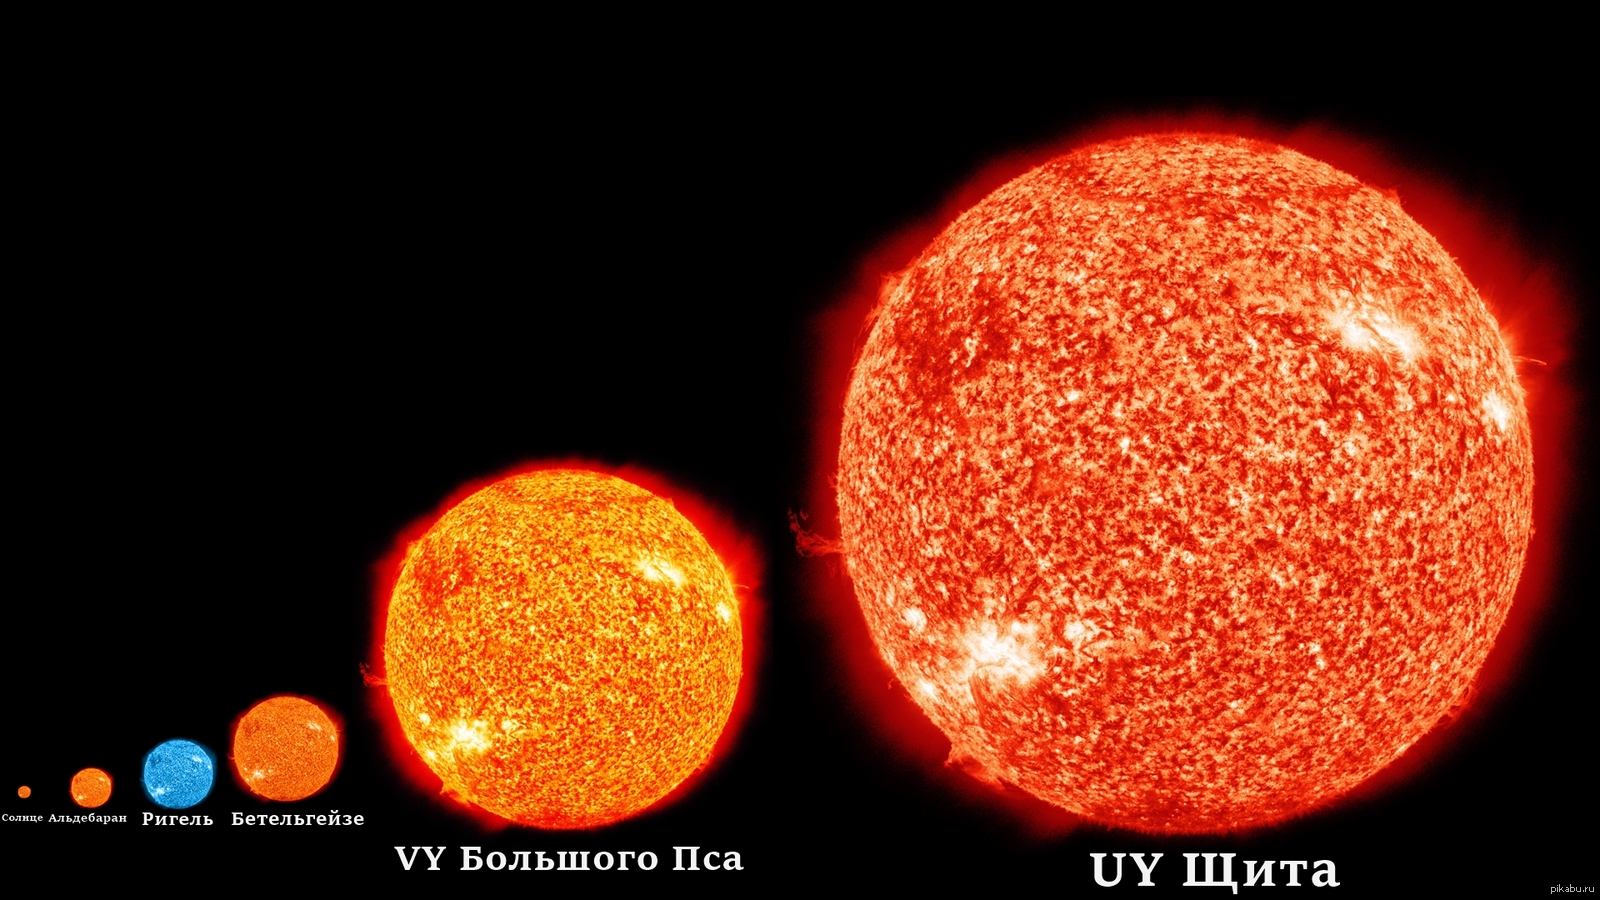 Звезда наименьшего размера. R136a1 и Бетельгейзе. Uy щита и Бетельгейзе. Альдебаран и Бетельгейзе. Самая большая звезда uy щита.